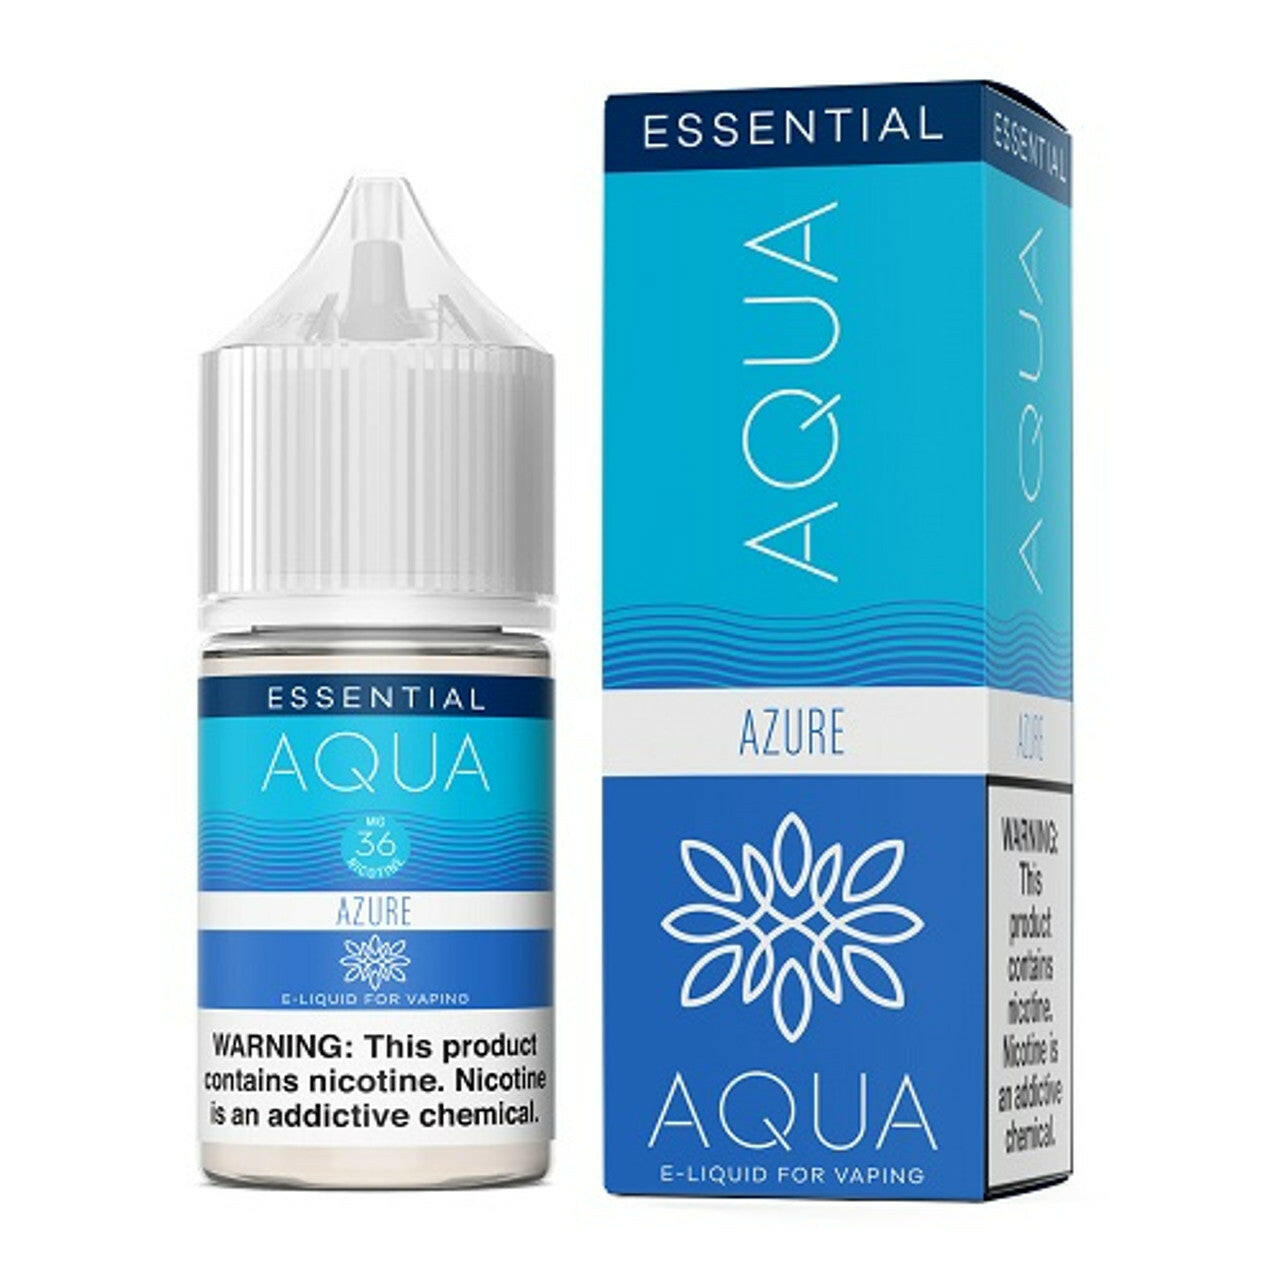 Aqua Essential Nicotine Salt E-Liquid By Marina Vape 30ML Azure 